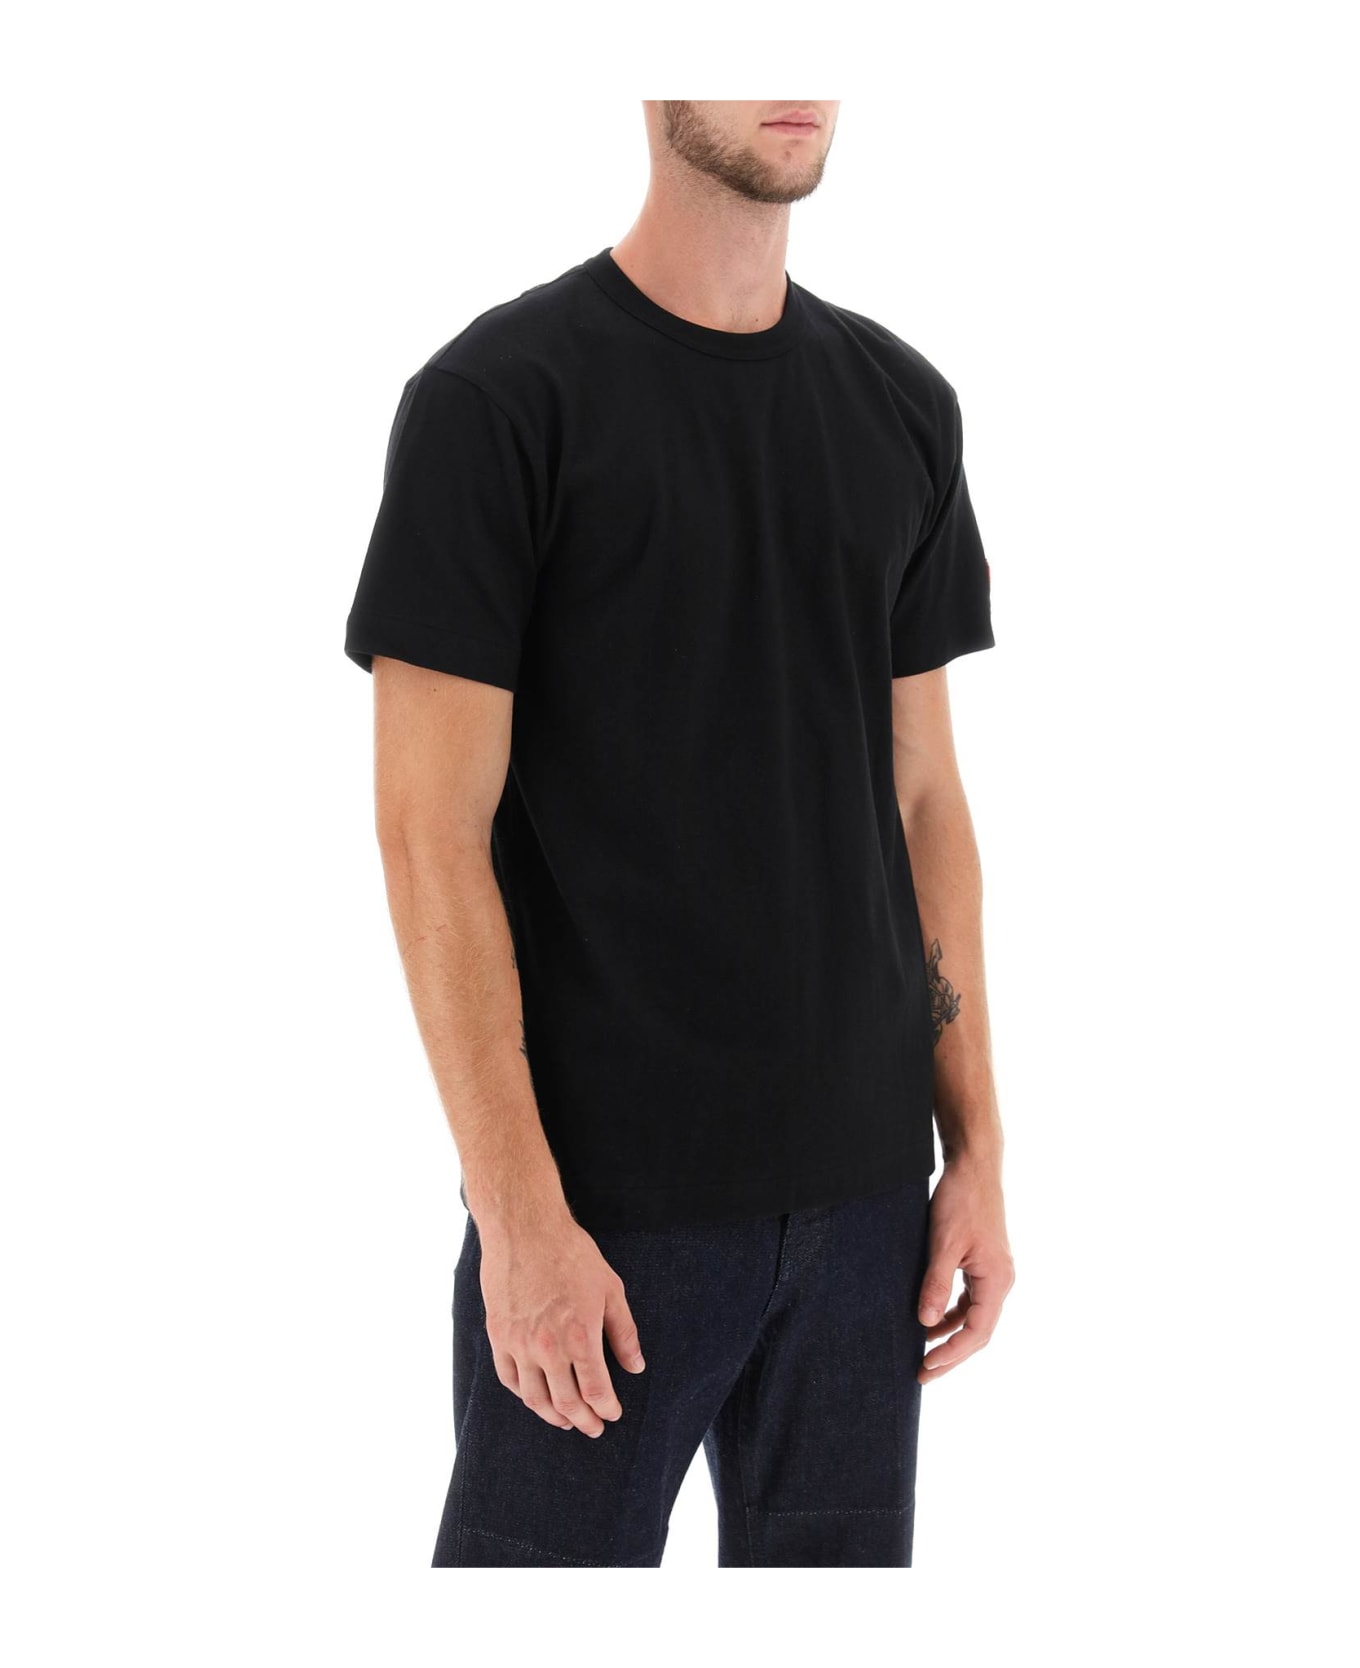 Comme des Garçons Shirt Boy T-shirt With Pixel Patch - Black シャツ